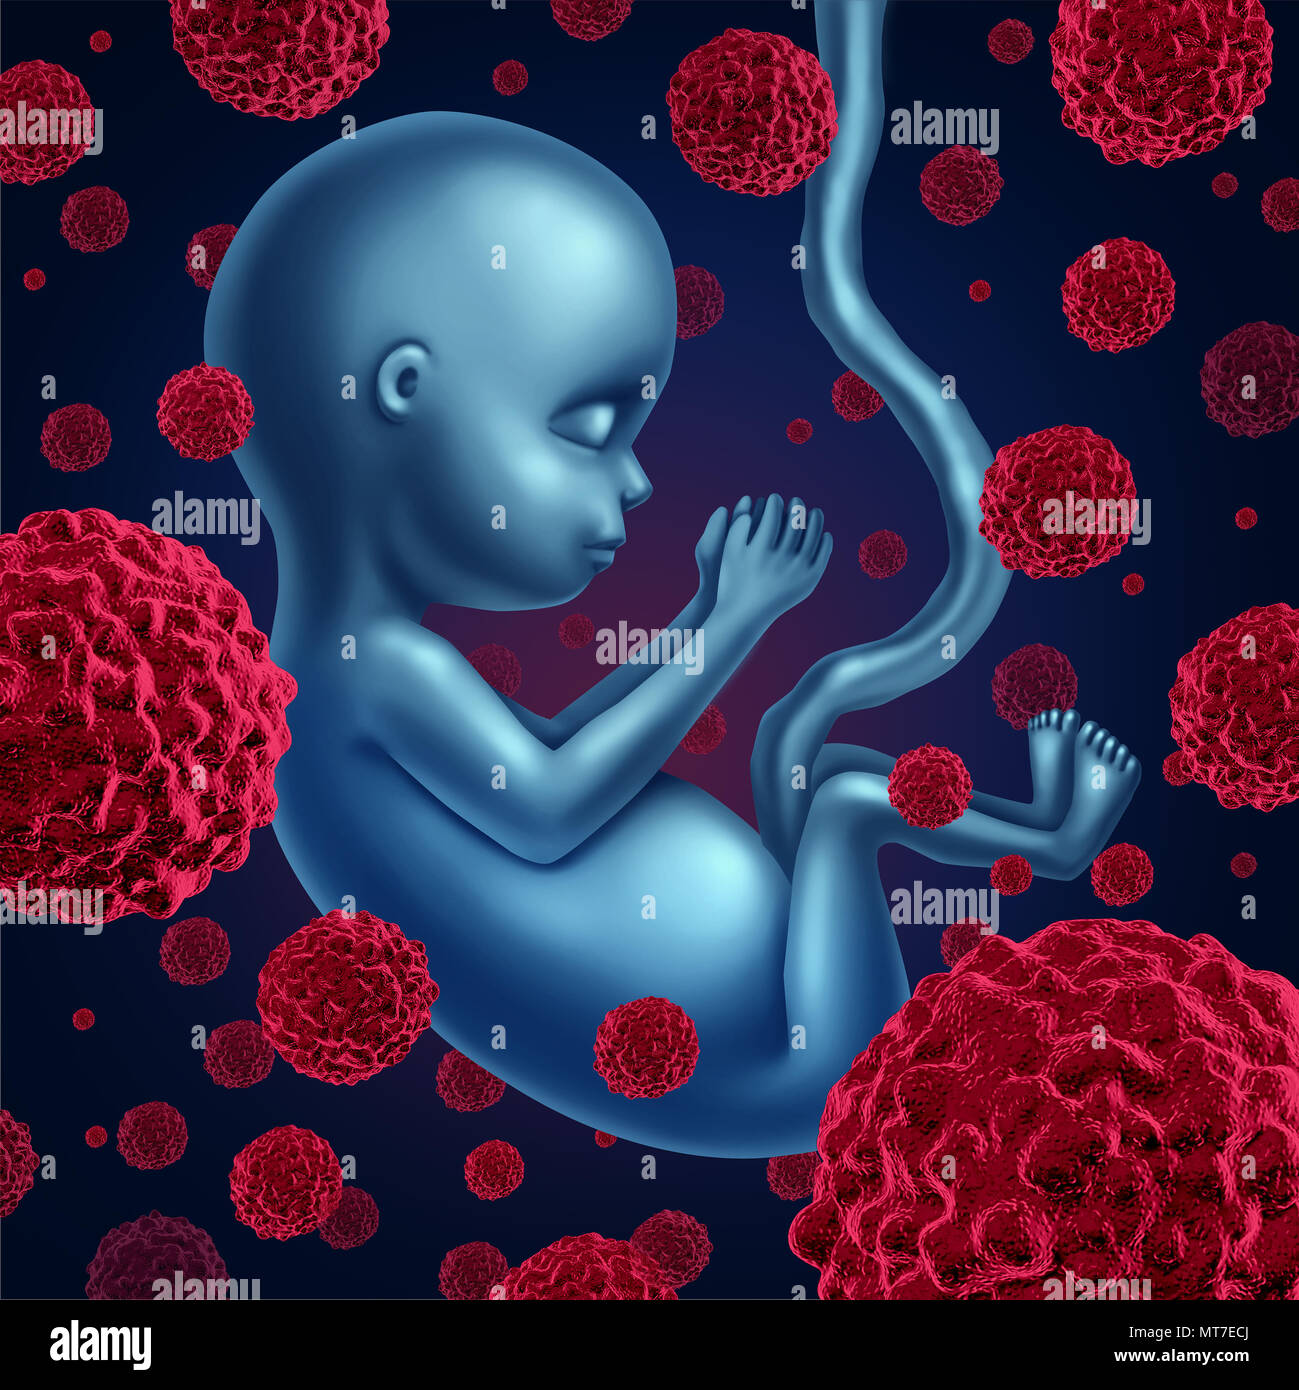 Feto cancro e malattie del feto come una prenatale malattia maligna e un simbolo di salute per tumore carcinomi con 3D'illustrazione degli elementi. Foto Stock